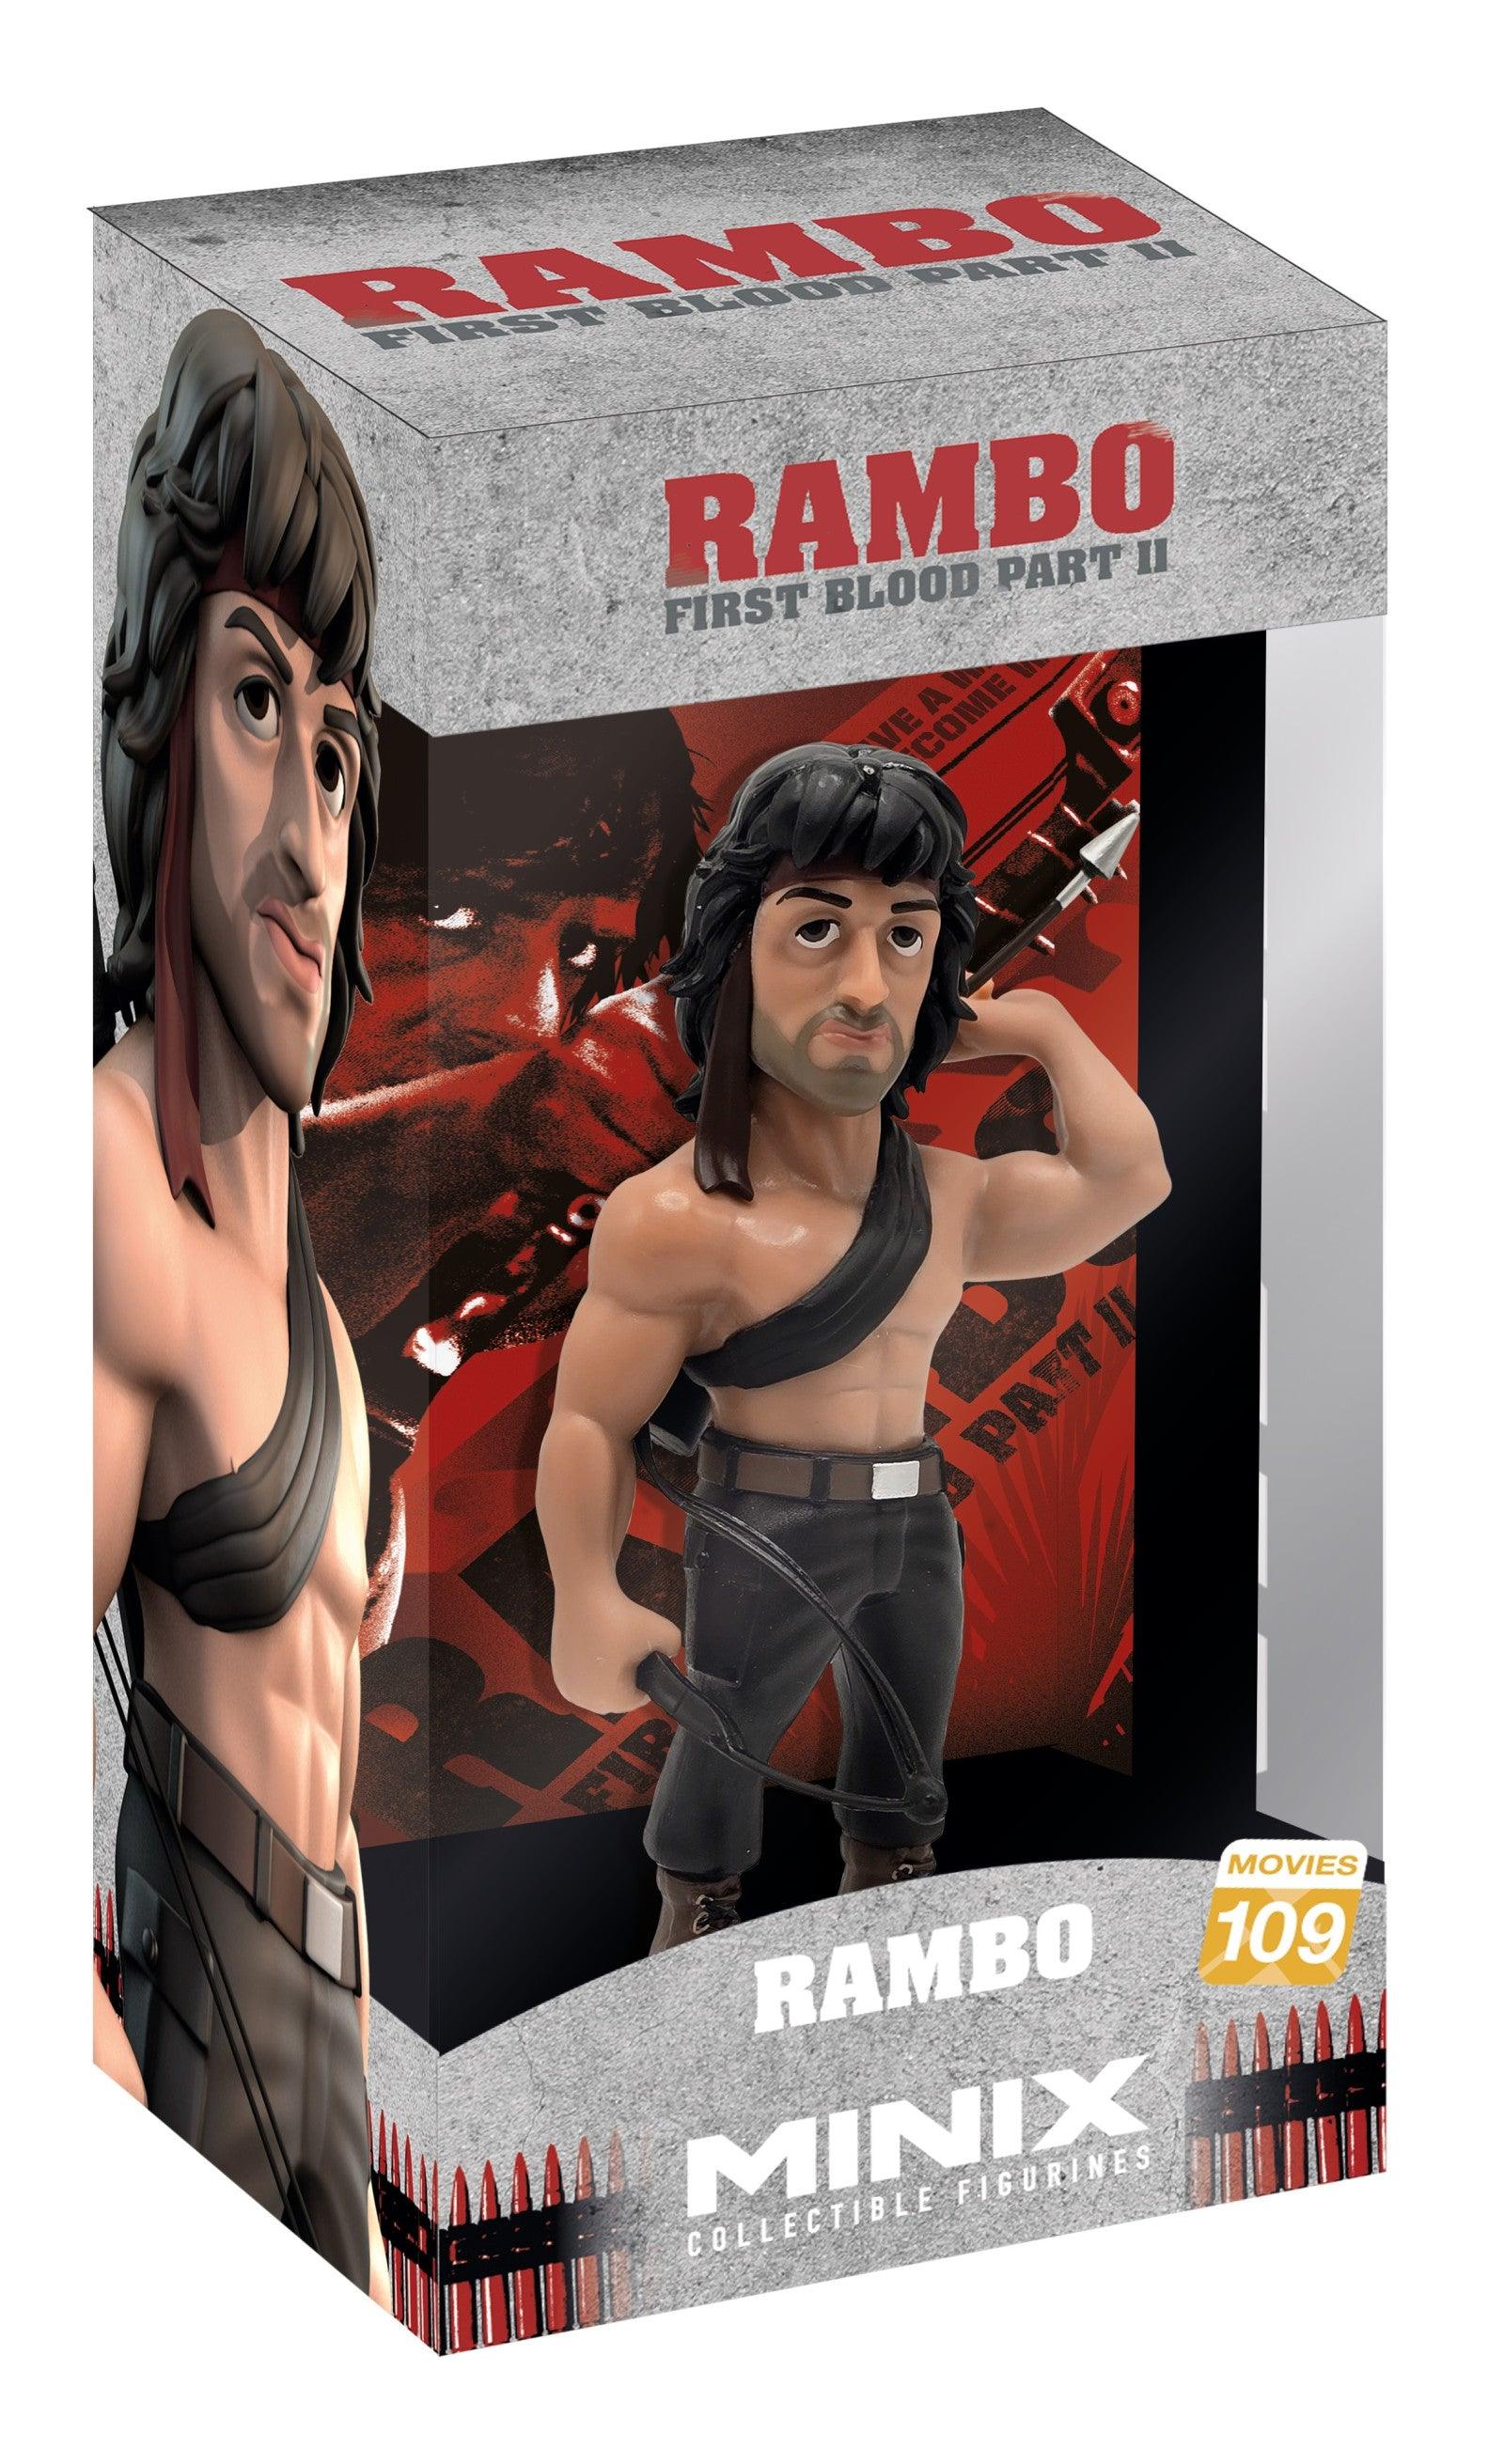 VR-116339 MINIX Rambo with Arco Bow 120 - MINIX - Titan Pop Culture